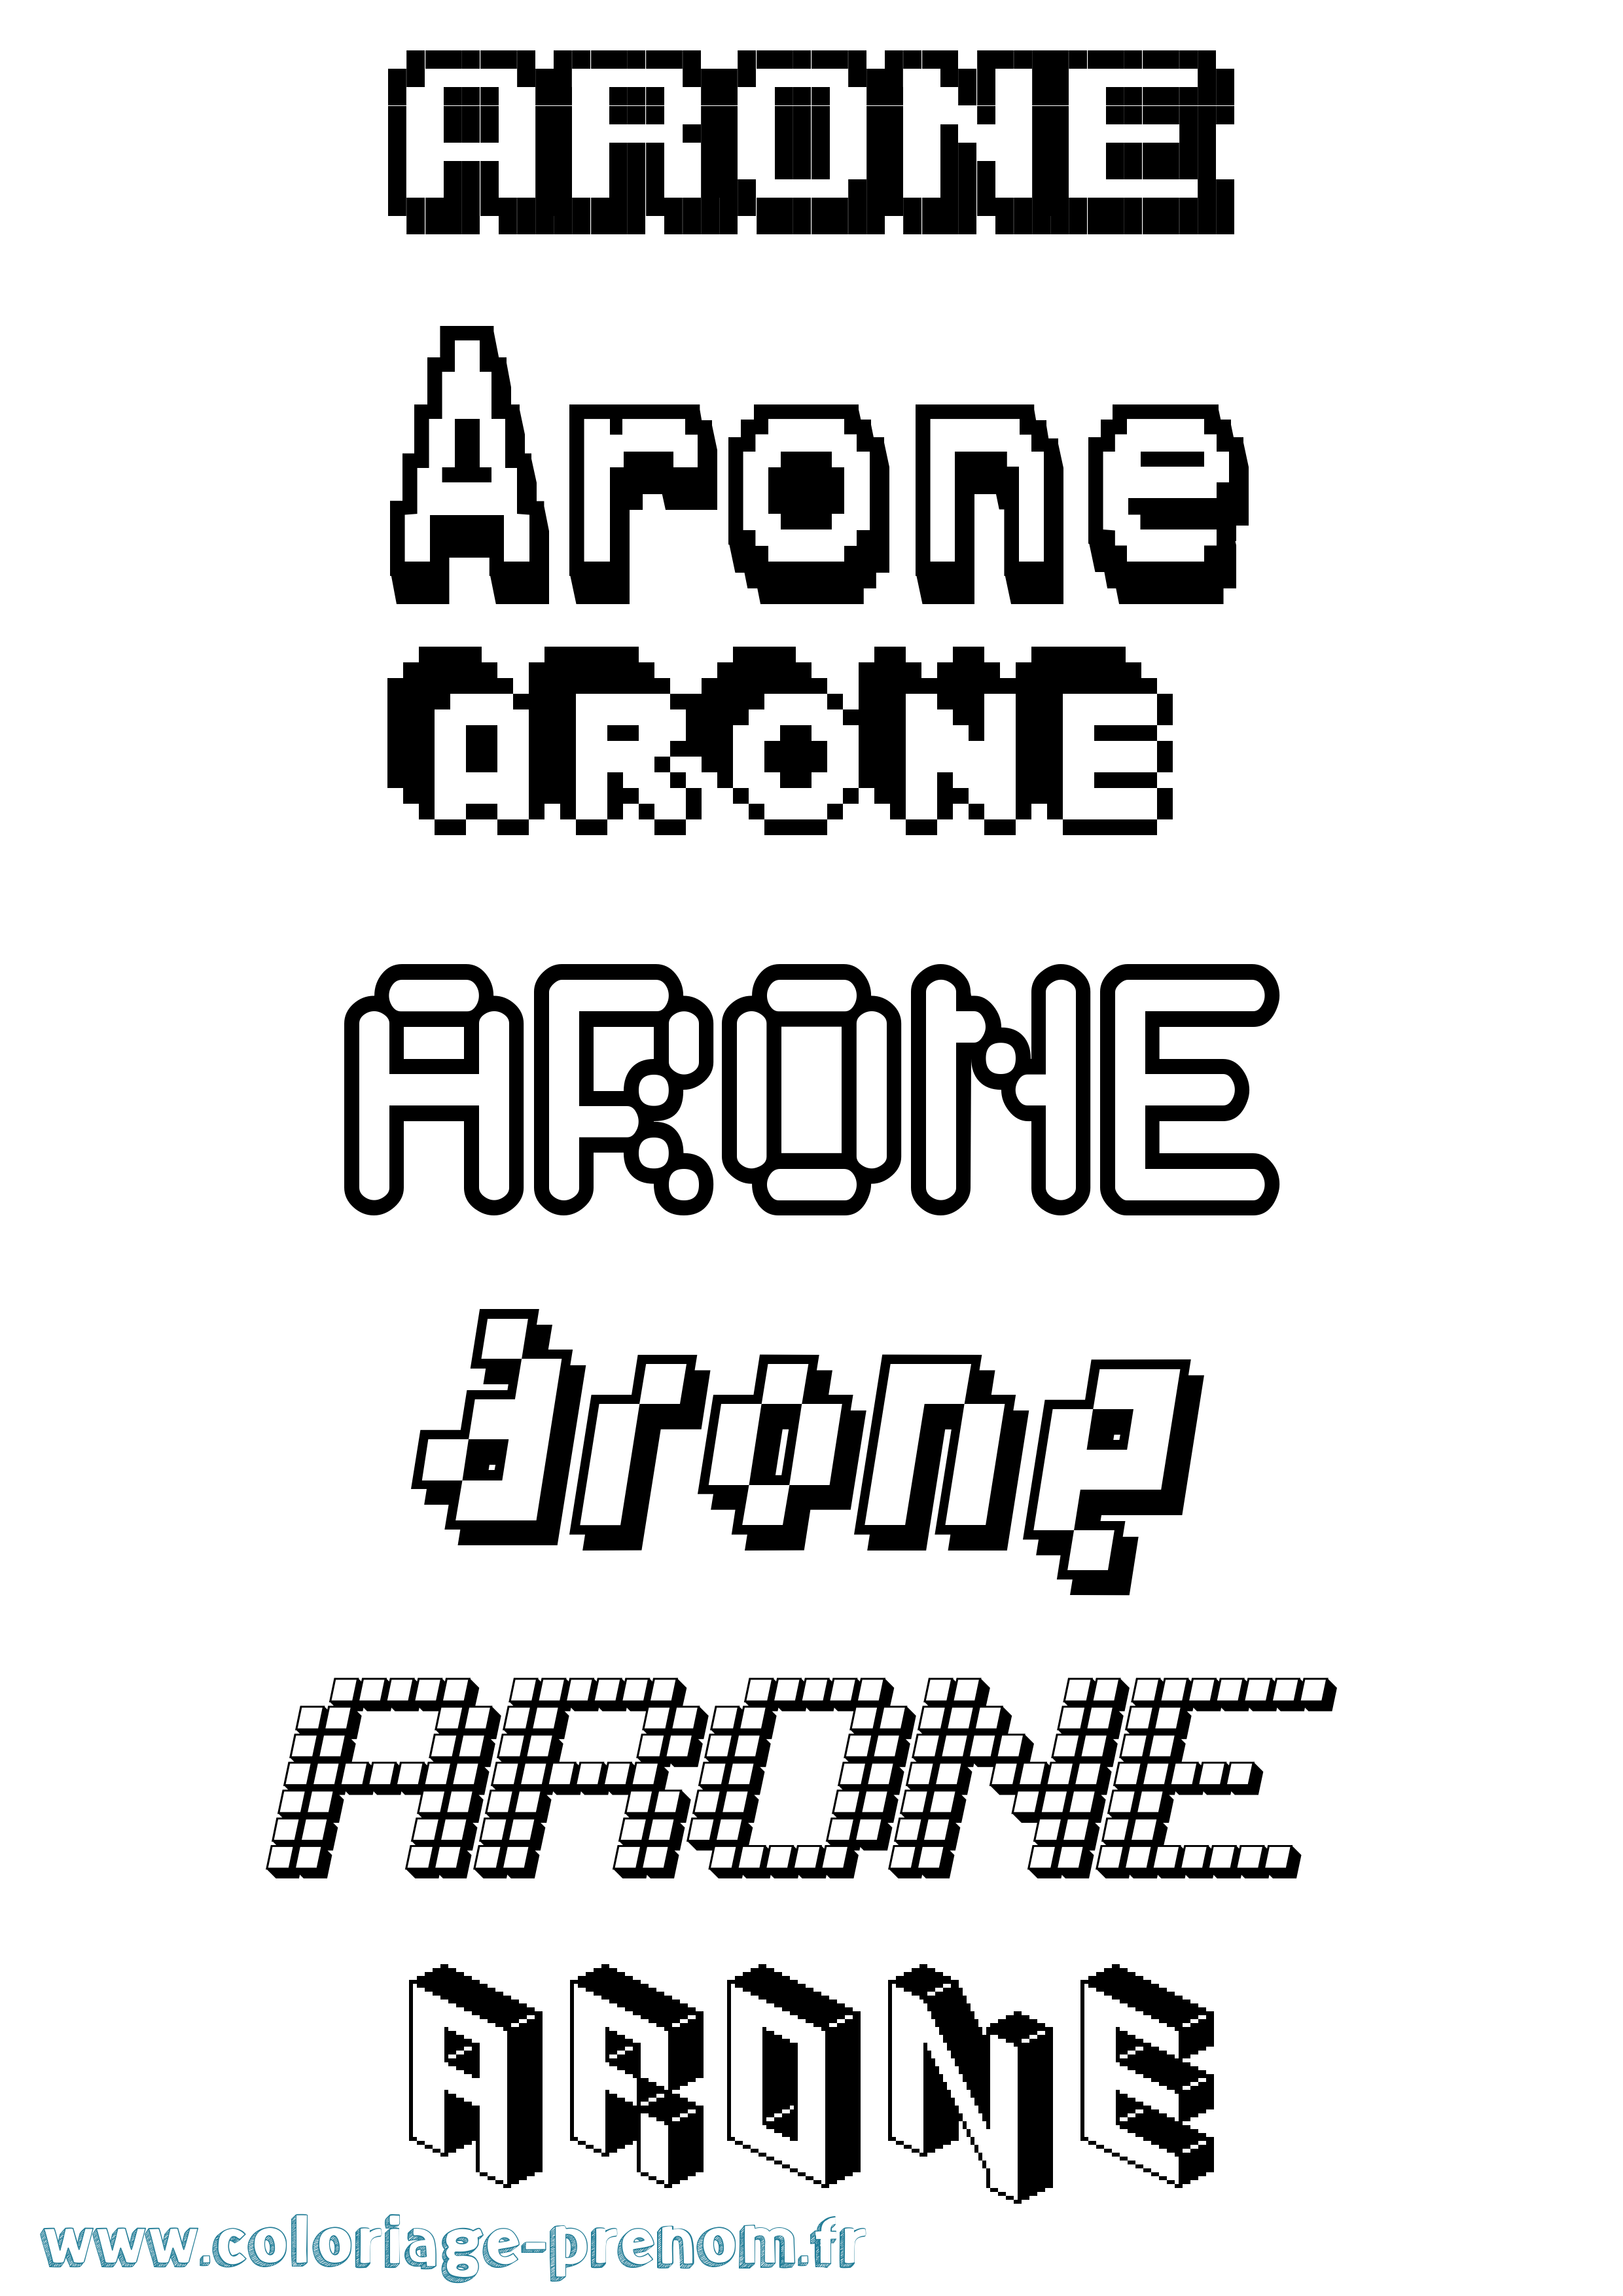 Coloriage prénom Arone